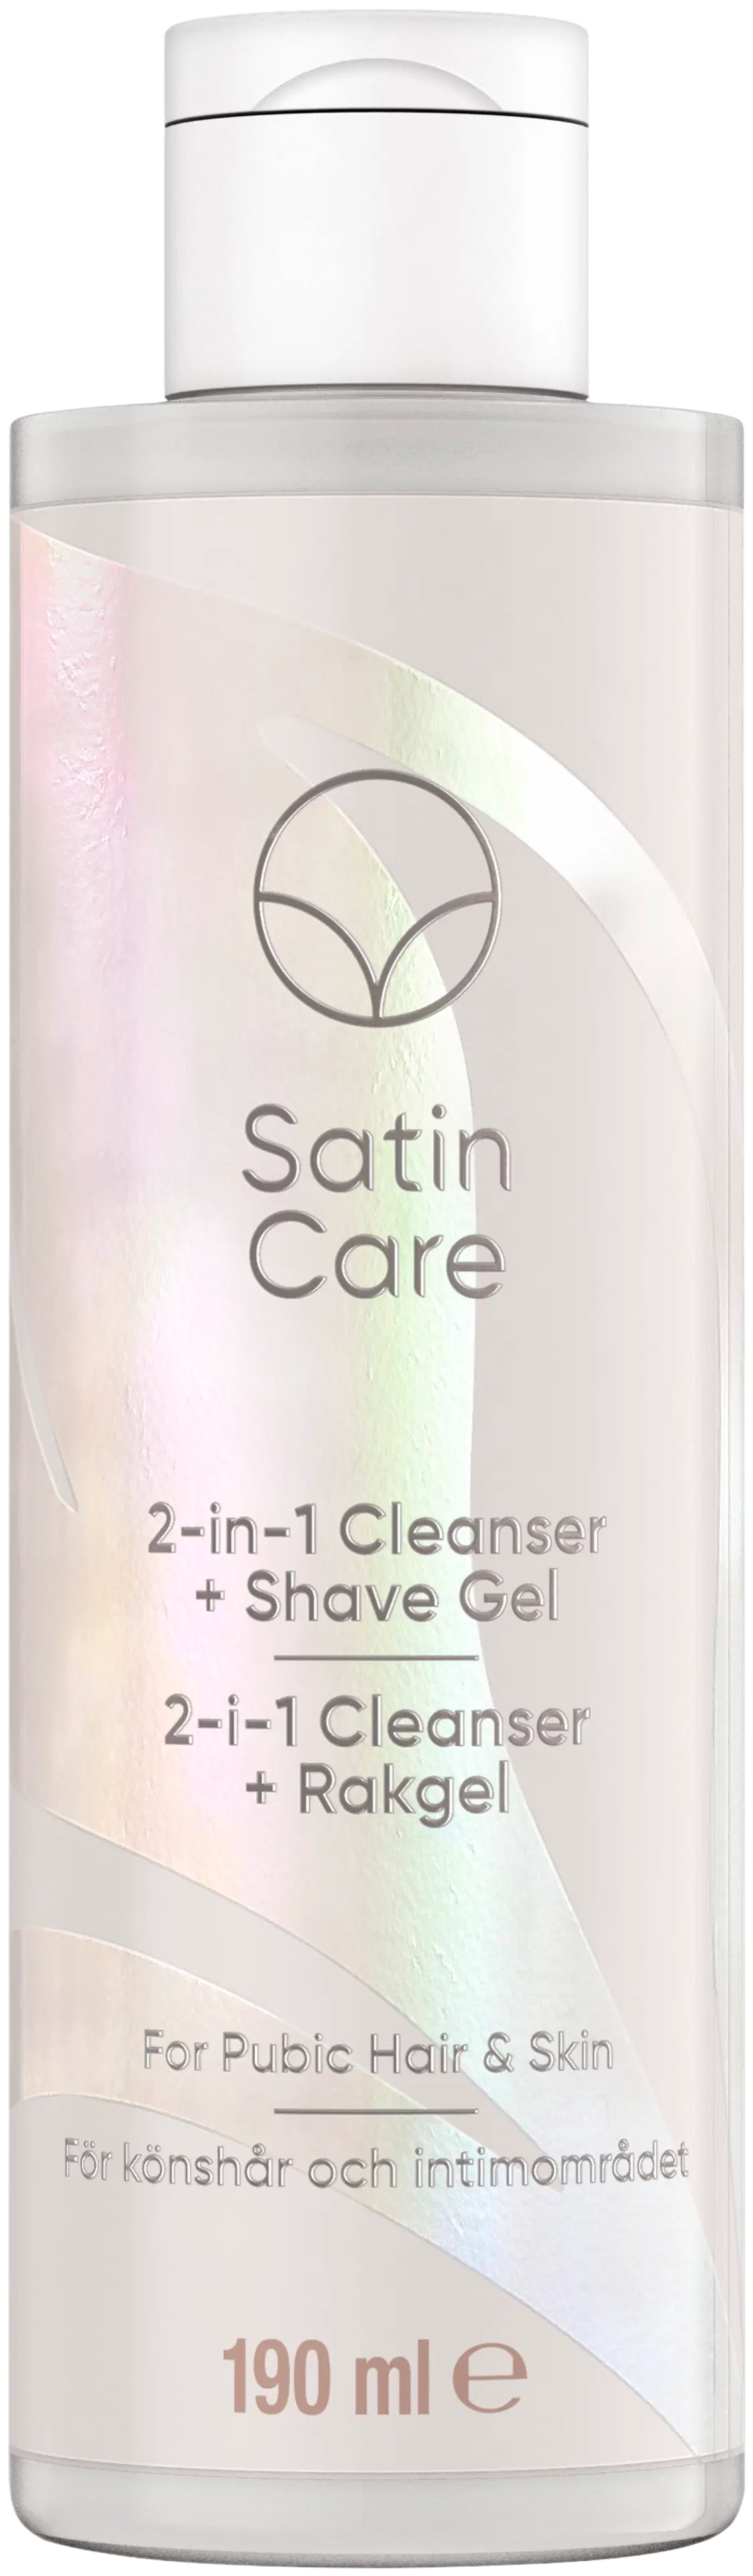 Gillette Satin Care 2in1 Cleanser + Shave Gel 190ml